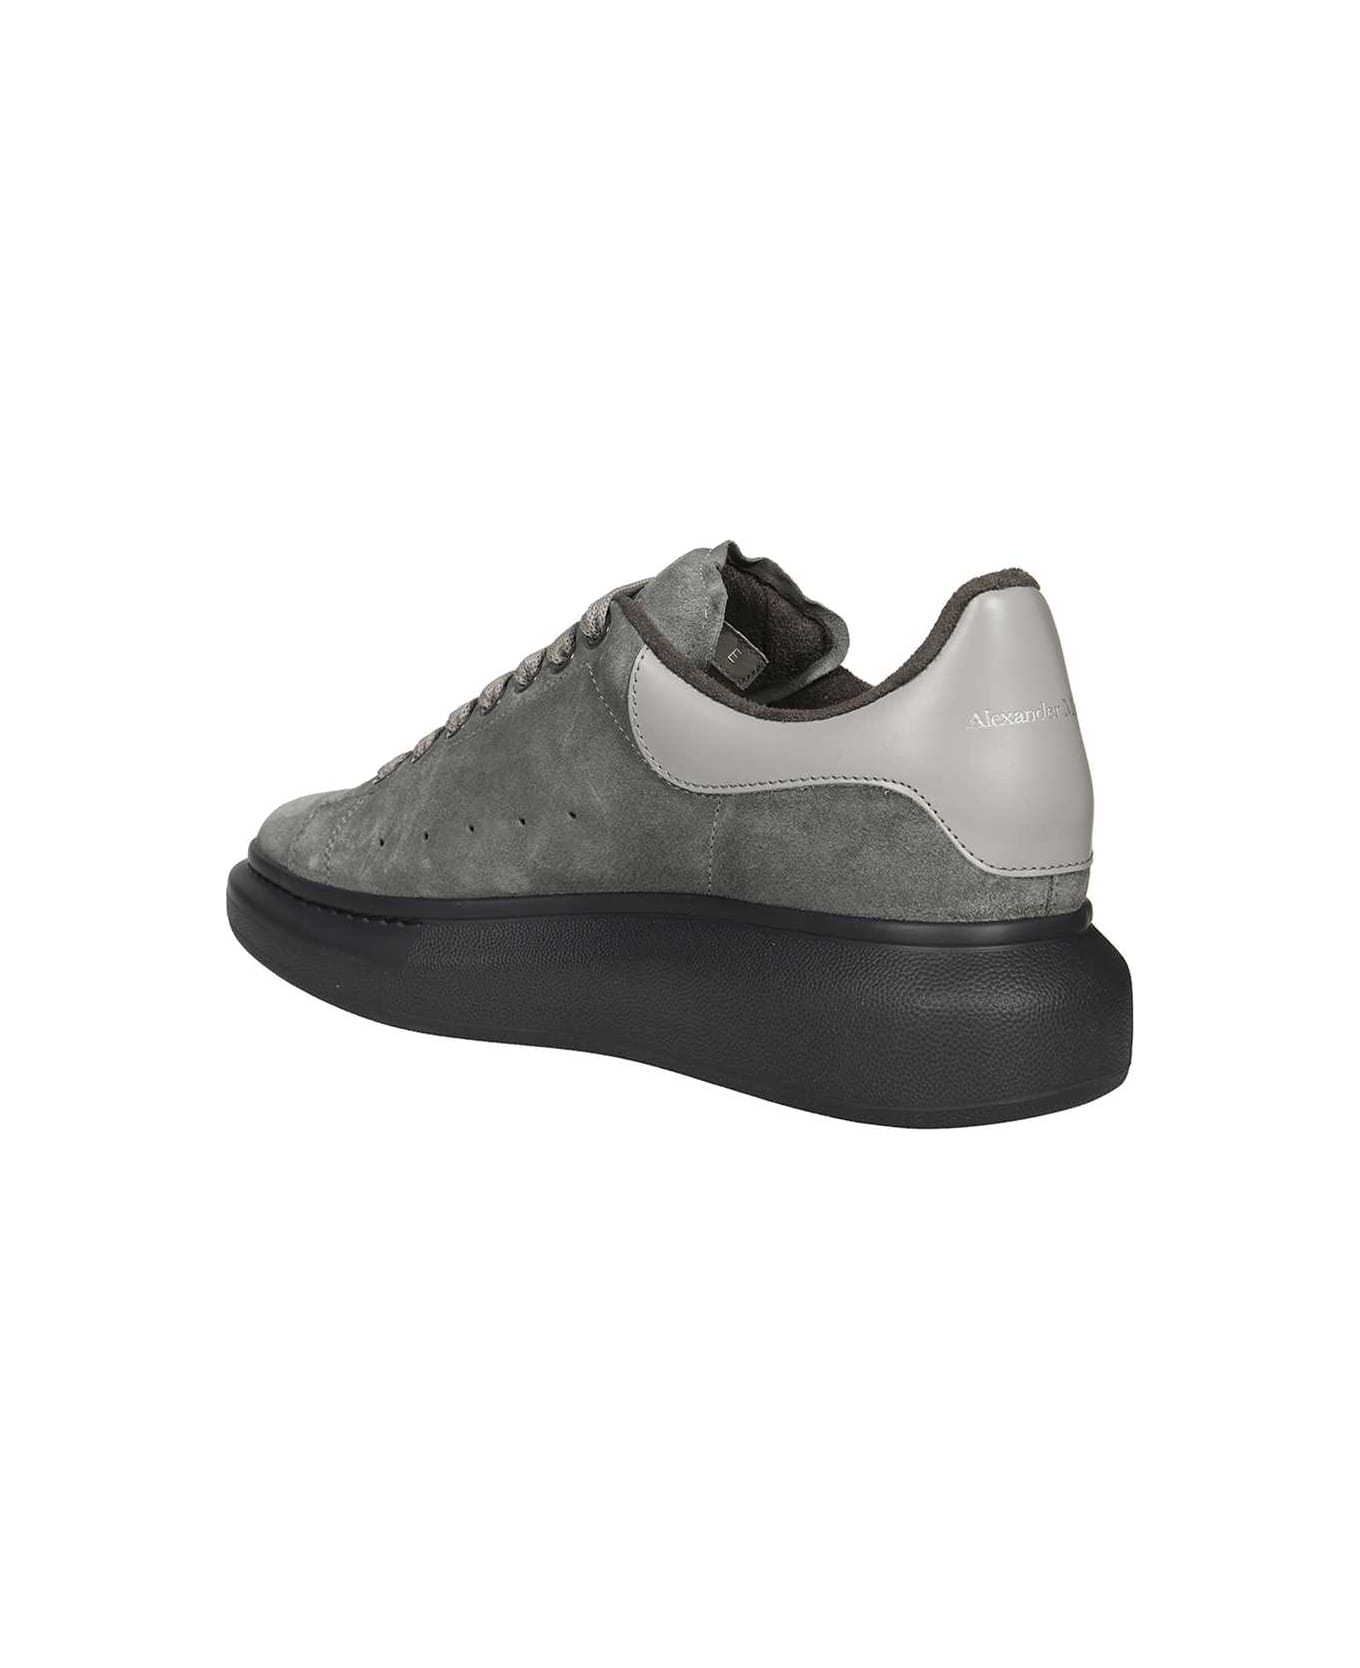 Alexander McQueen Larry Suede Sneakers - grey スニーカー